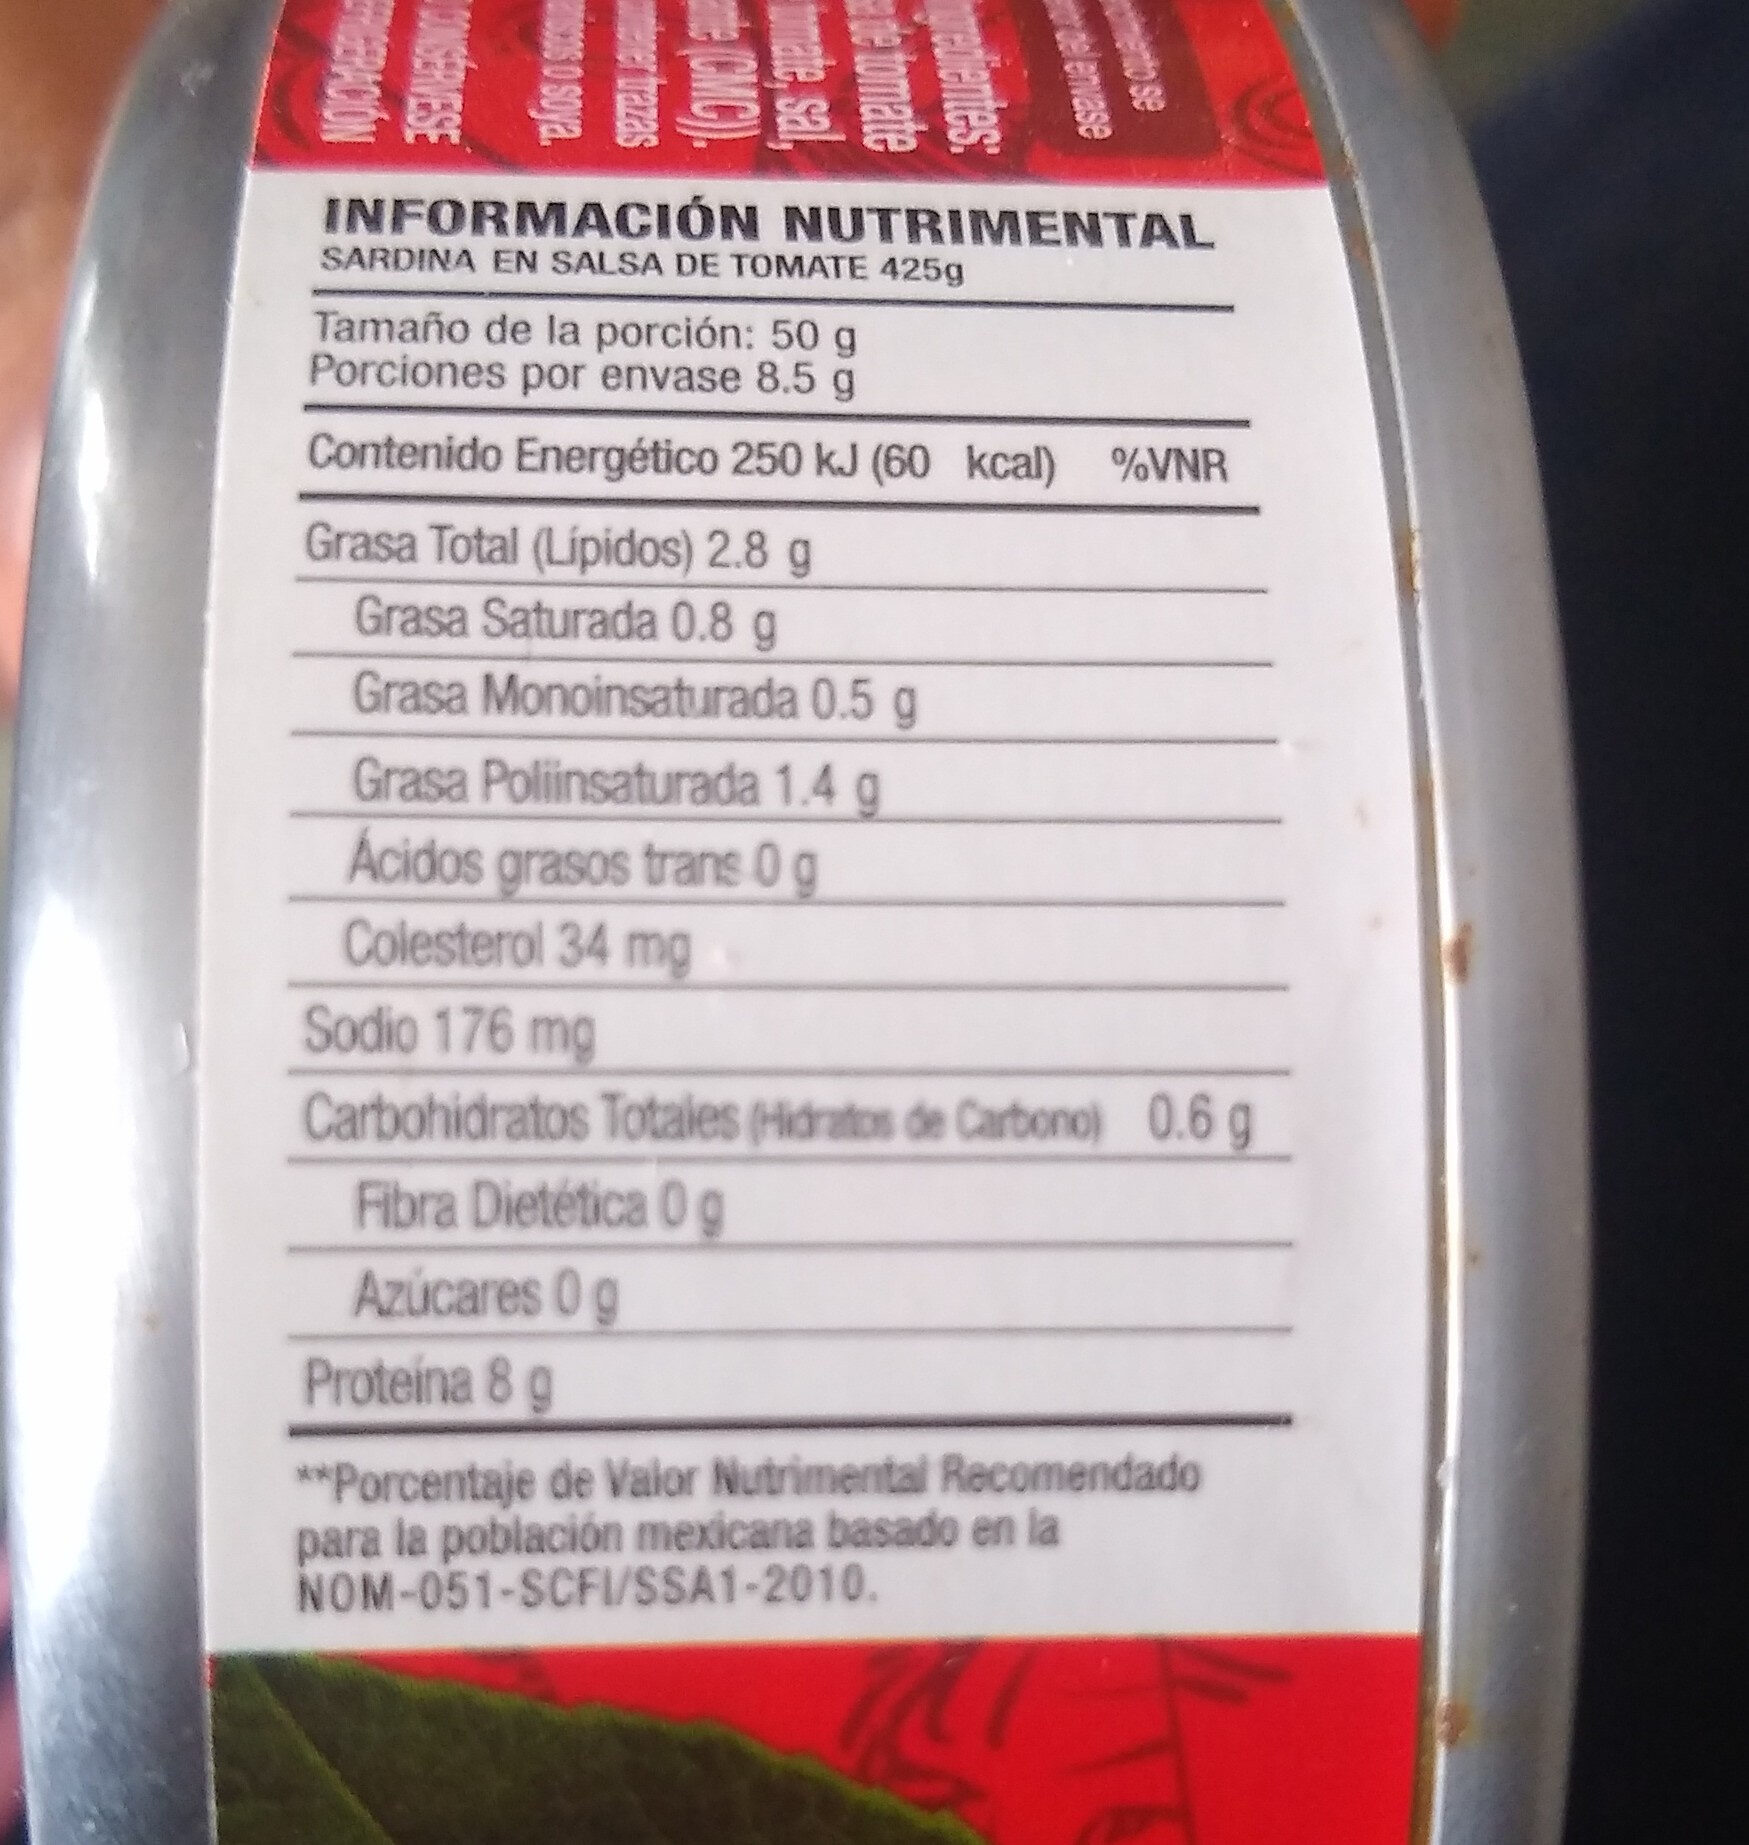 Sardina en salsa de tomate - Información nutricional